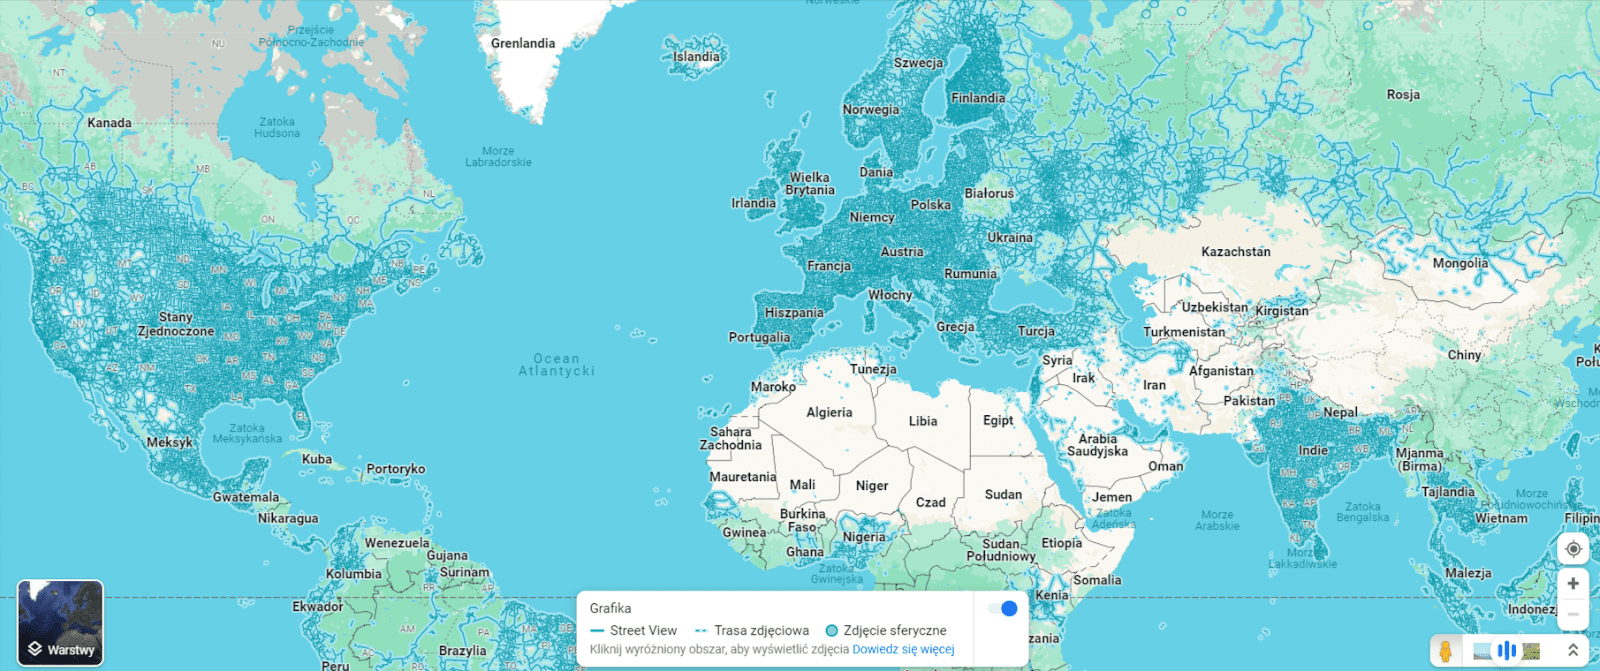 Zrzut ekranu z Google Maps z siatką ulic, które można podejrzeć w Google Street View. Na zrzucie widać, że najwięcej miejsc można zobaczyć w Europie, Indiach oraz Ameryce Północnej.